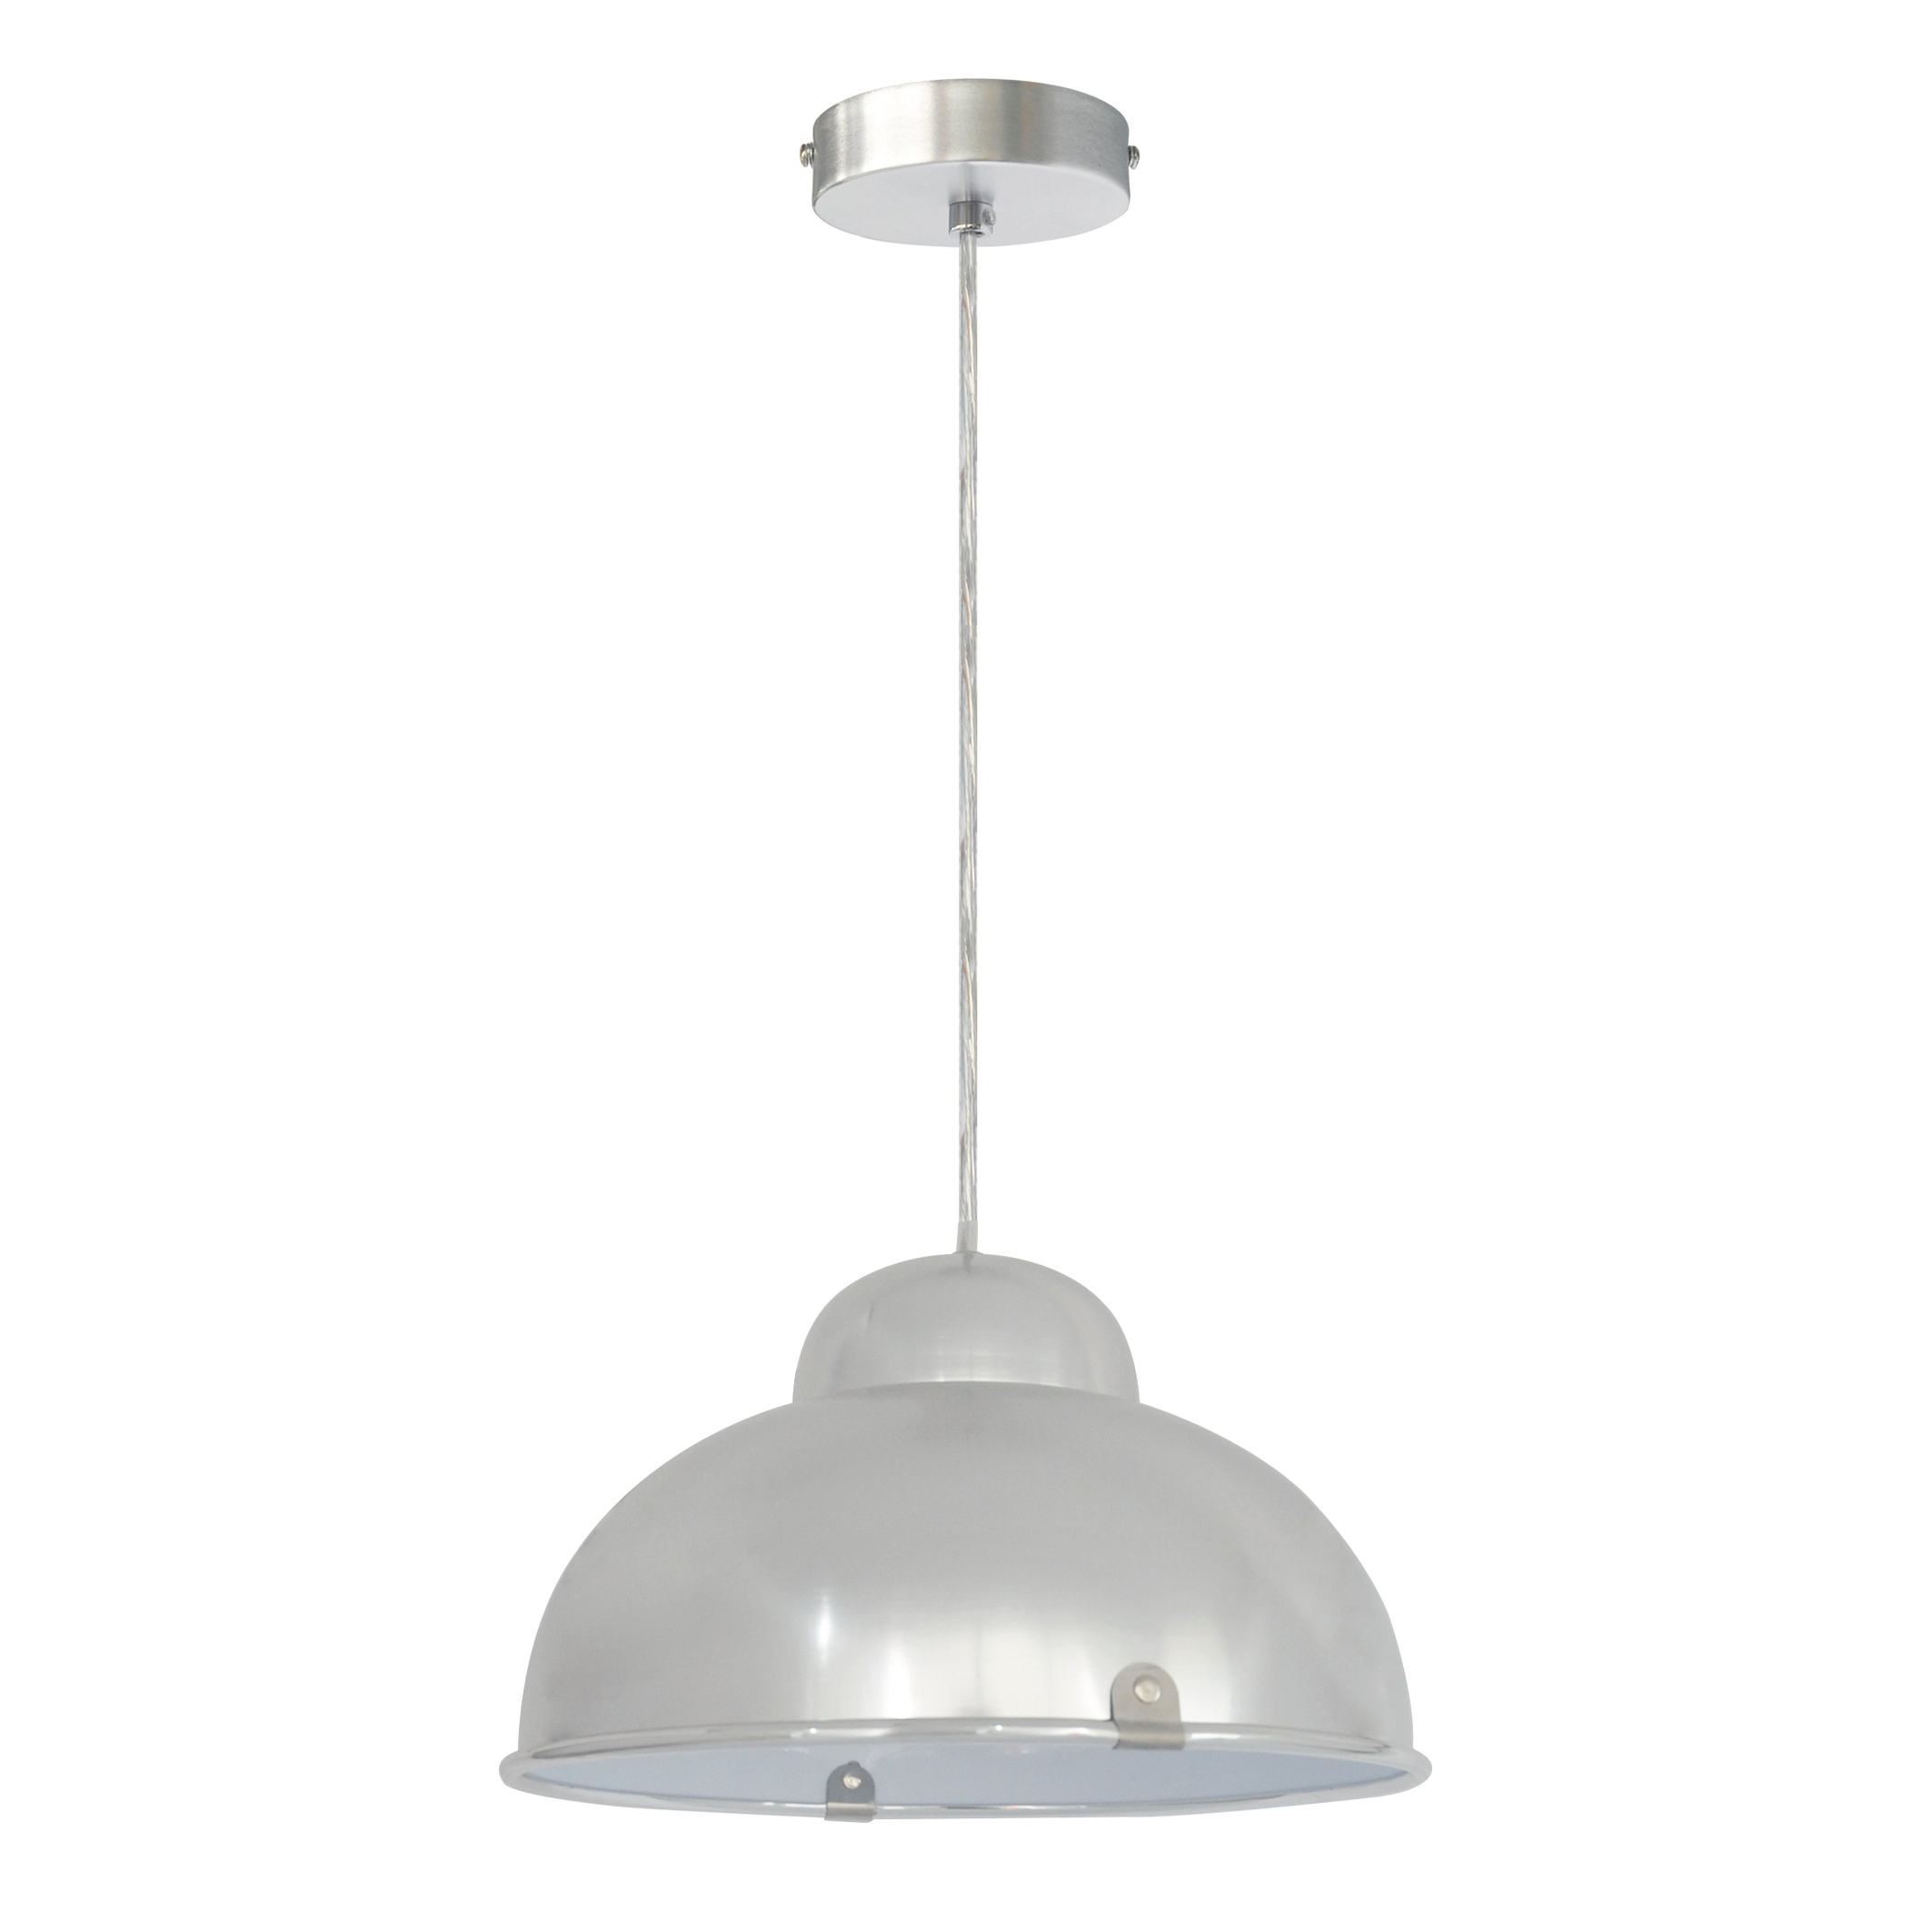 Lampadario Moderno Farell alluminio in metallo, D. 31 cm, INSPIRE - 1